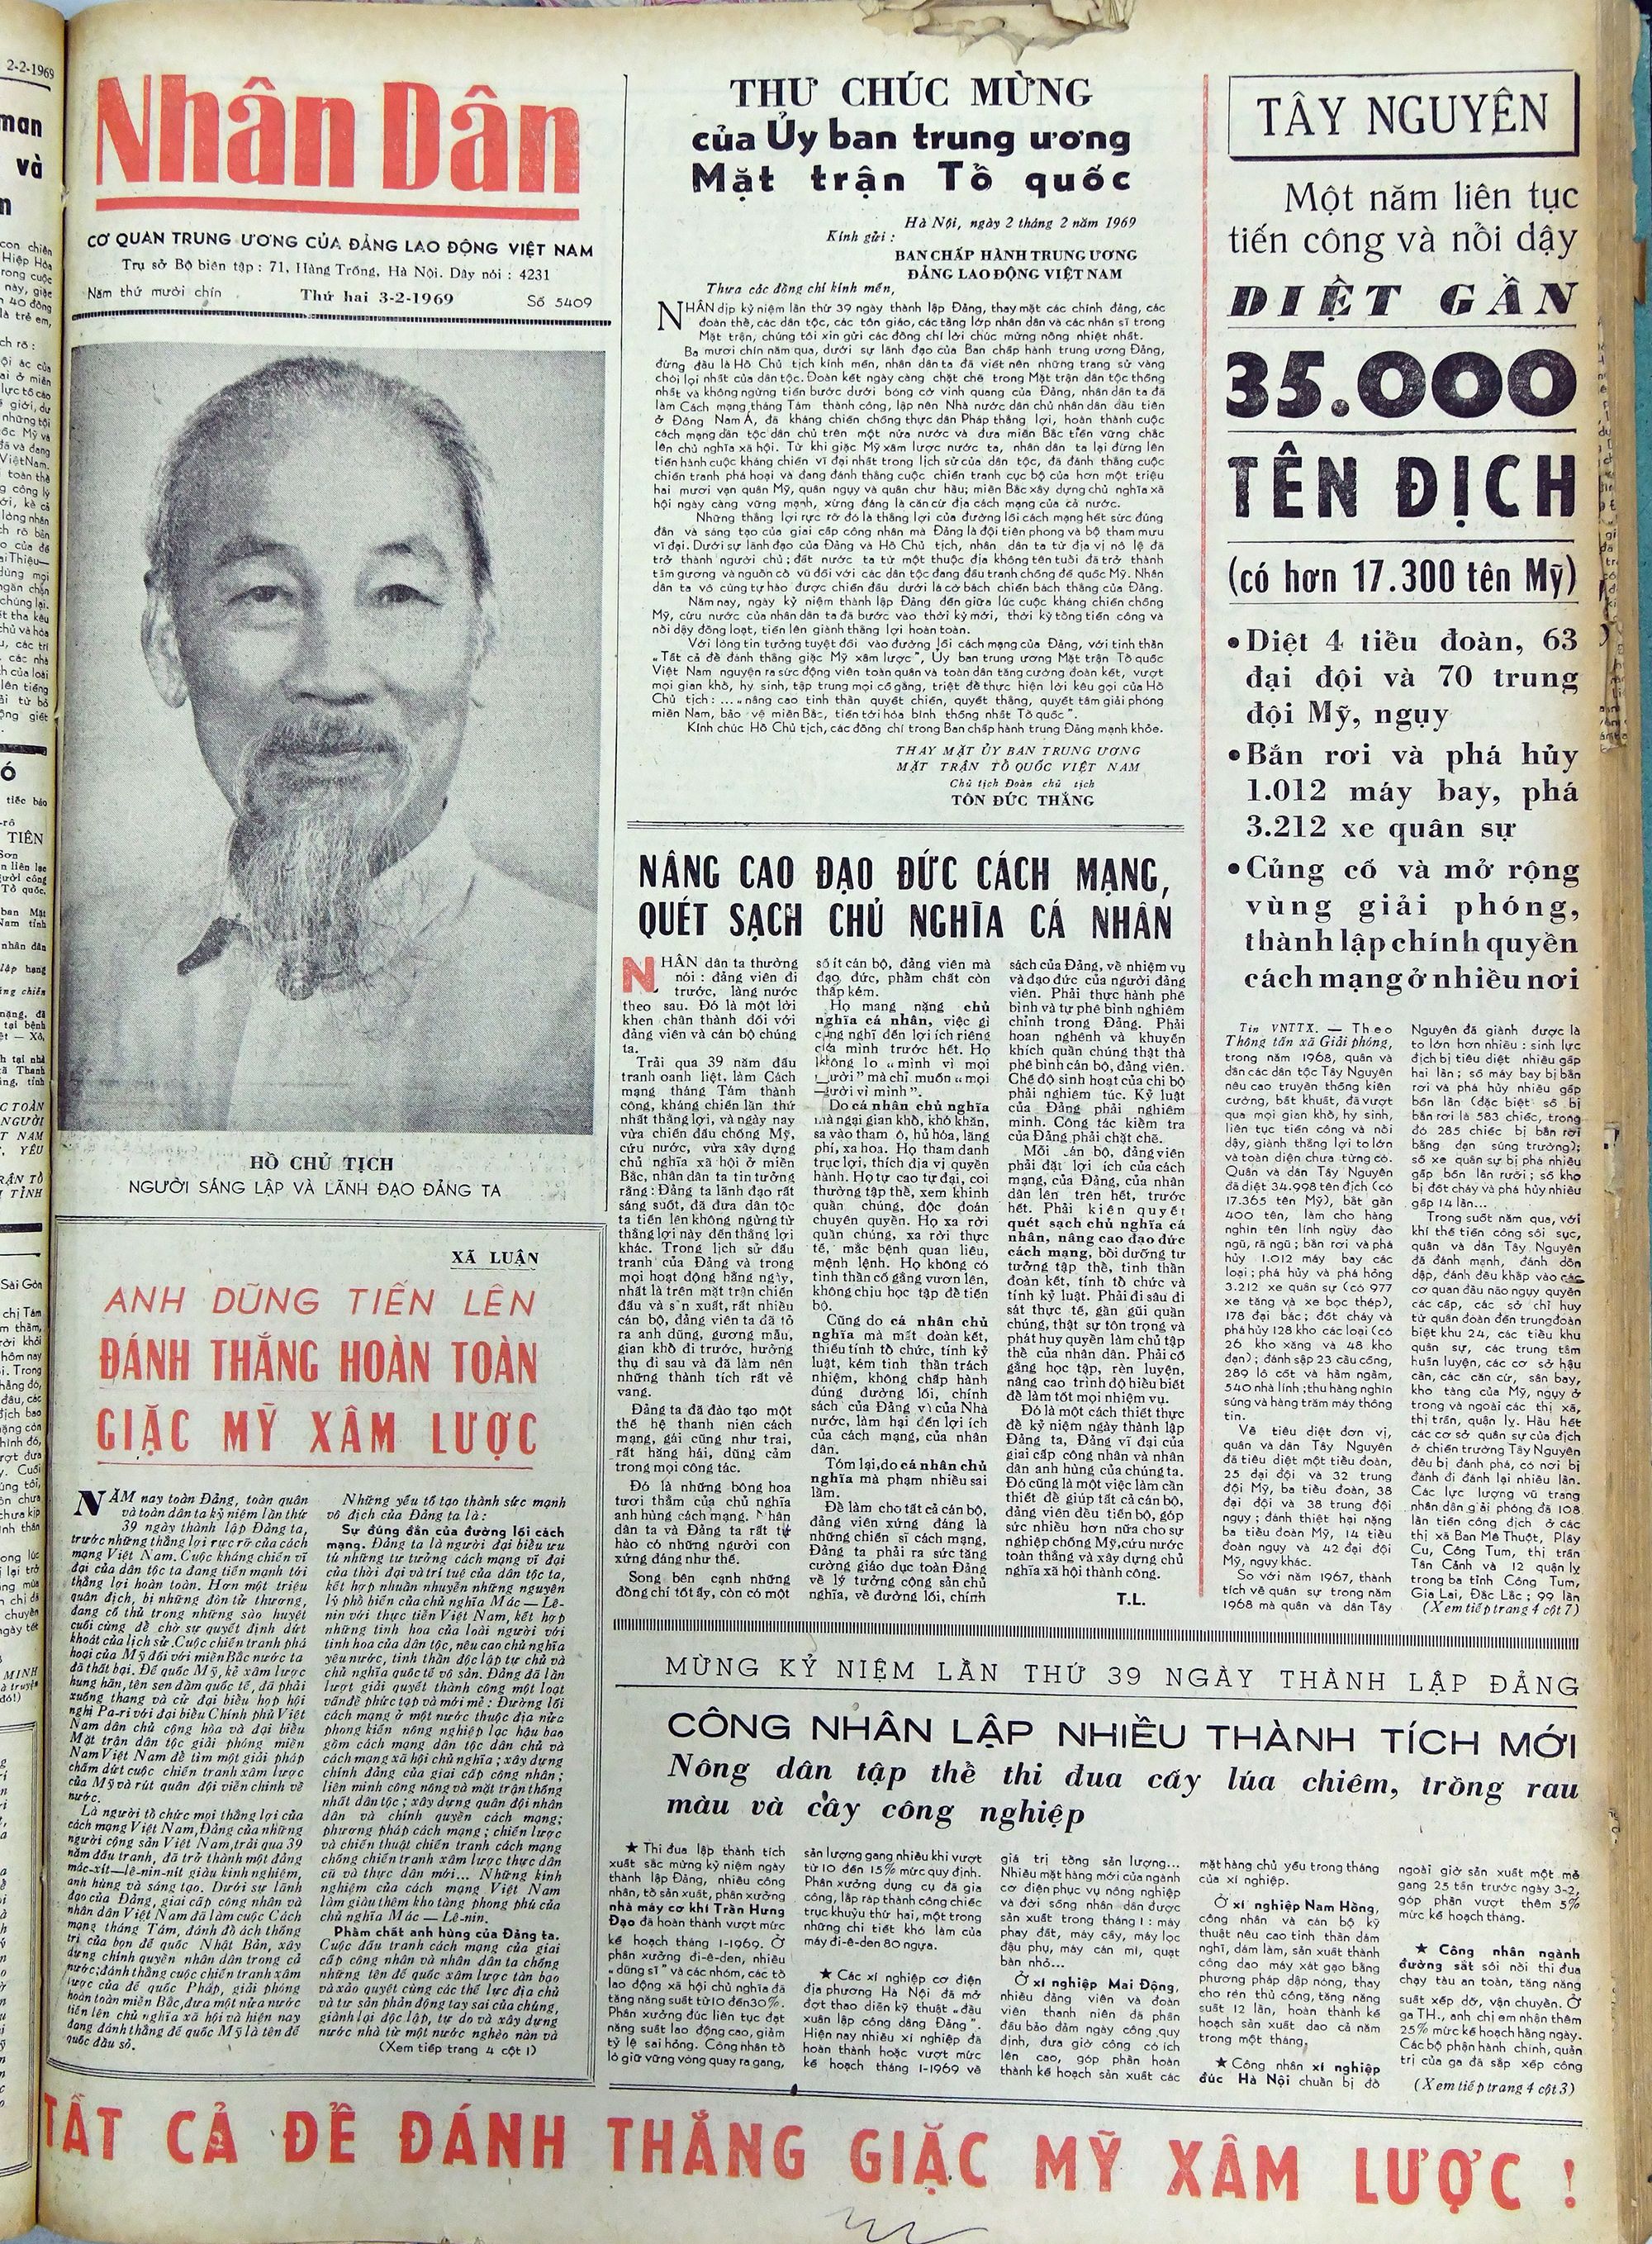 Hồ Chí Minh: Người thầy vĩ đại của người làm báo Cách mạng Việt Nam - ảnh 16